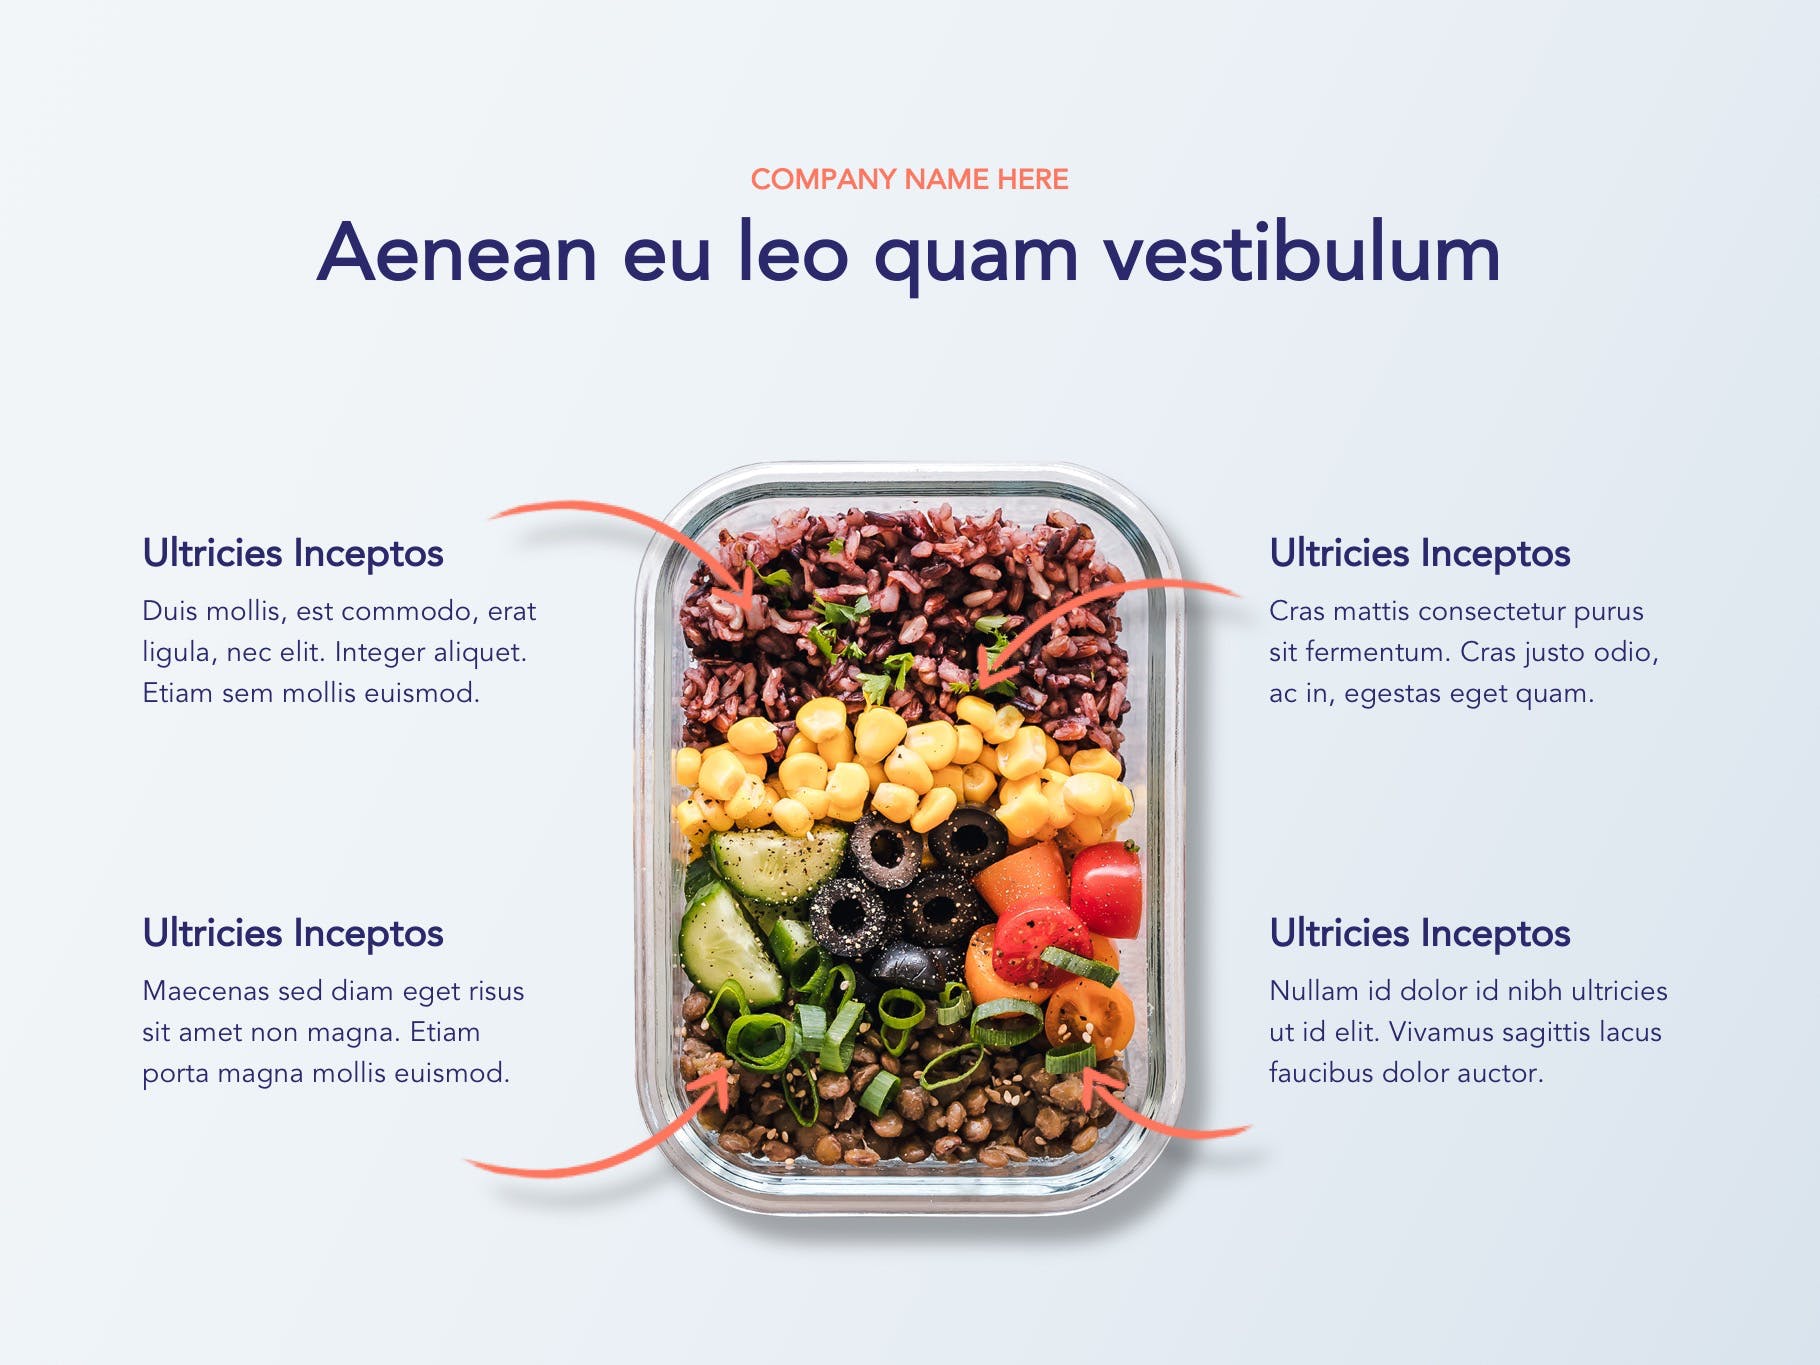 营养配餐食谱谷歌幻灯片设计模板 Nutritious Google Slides Template插图(5)